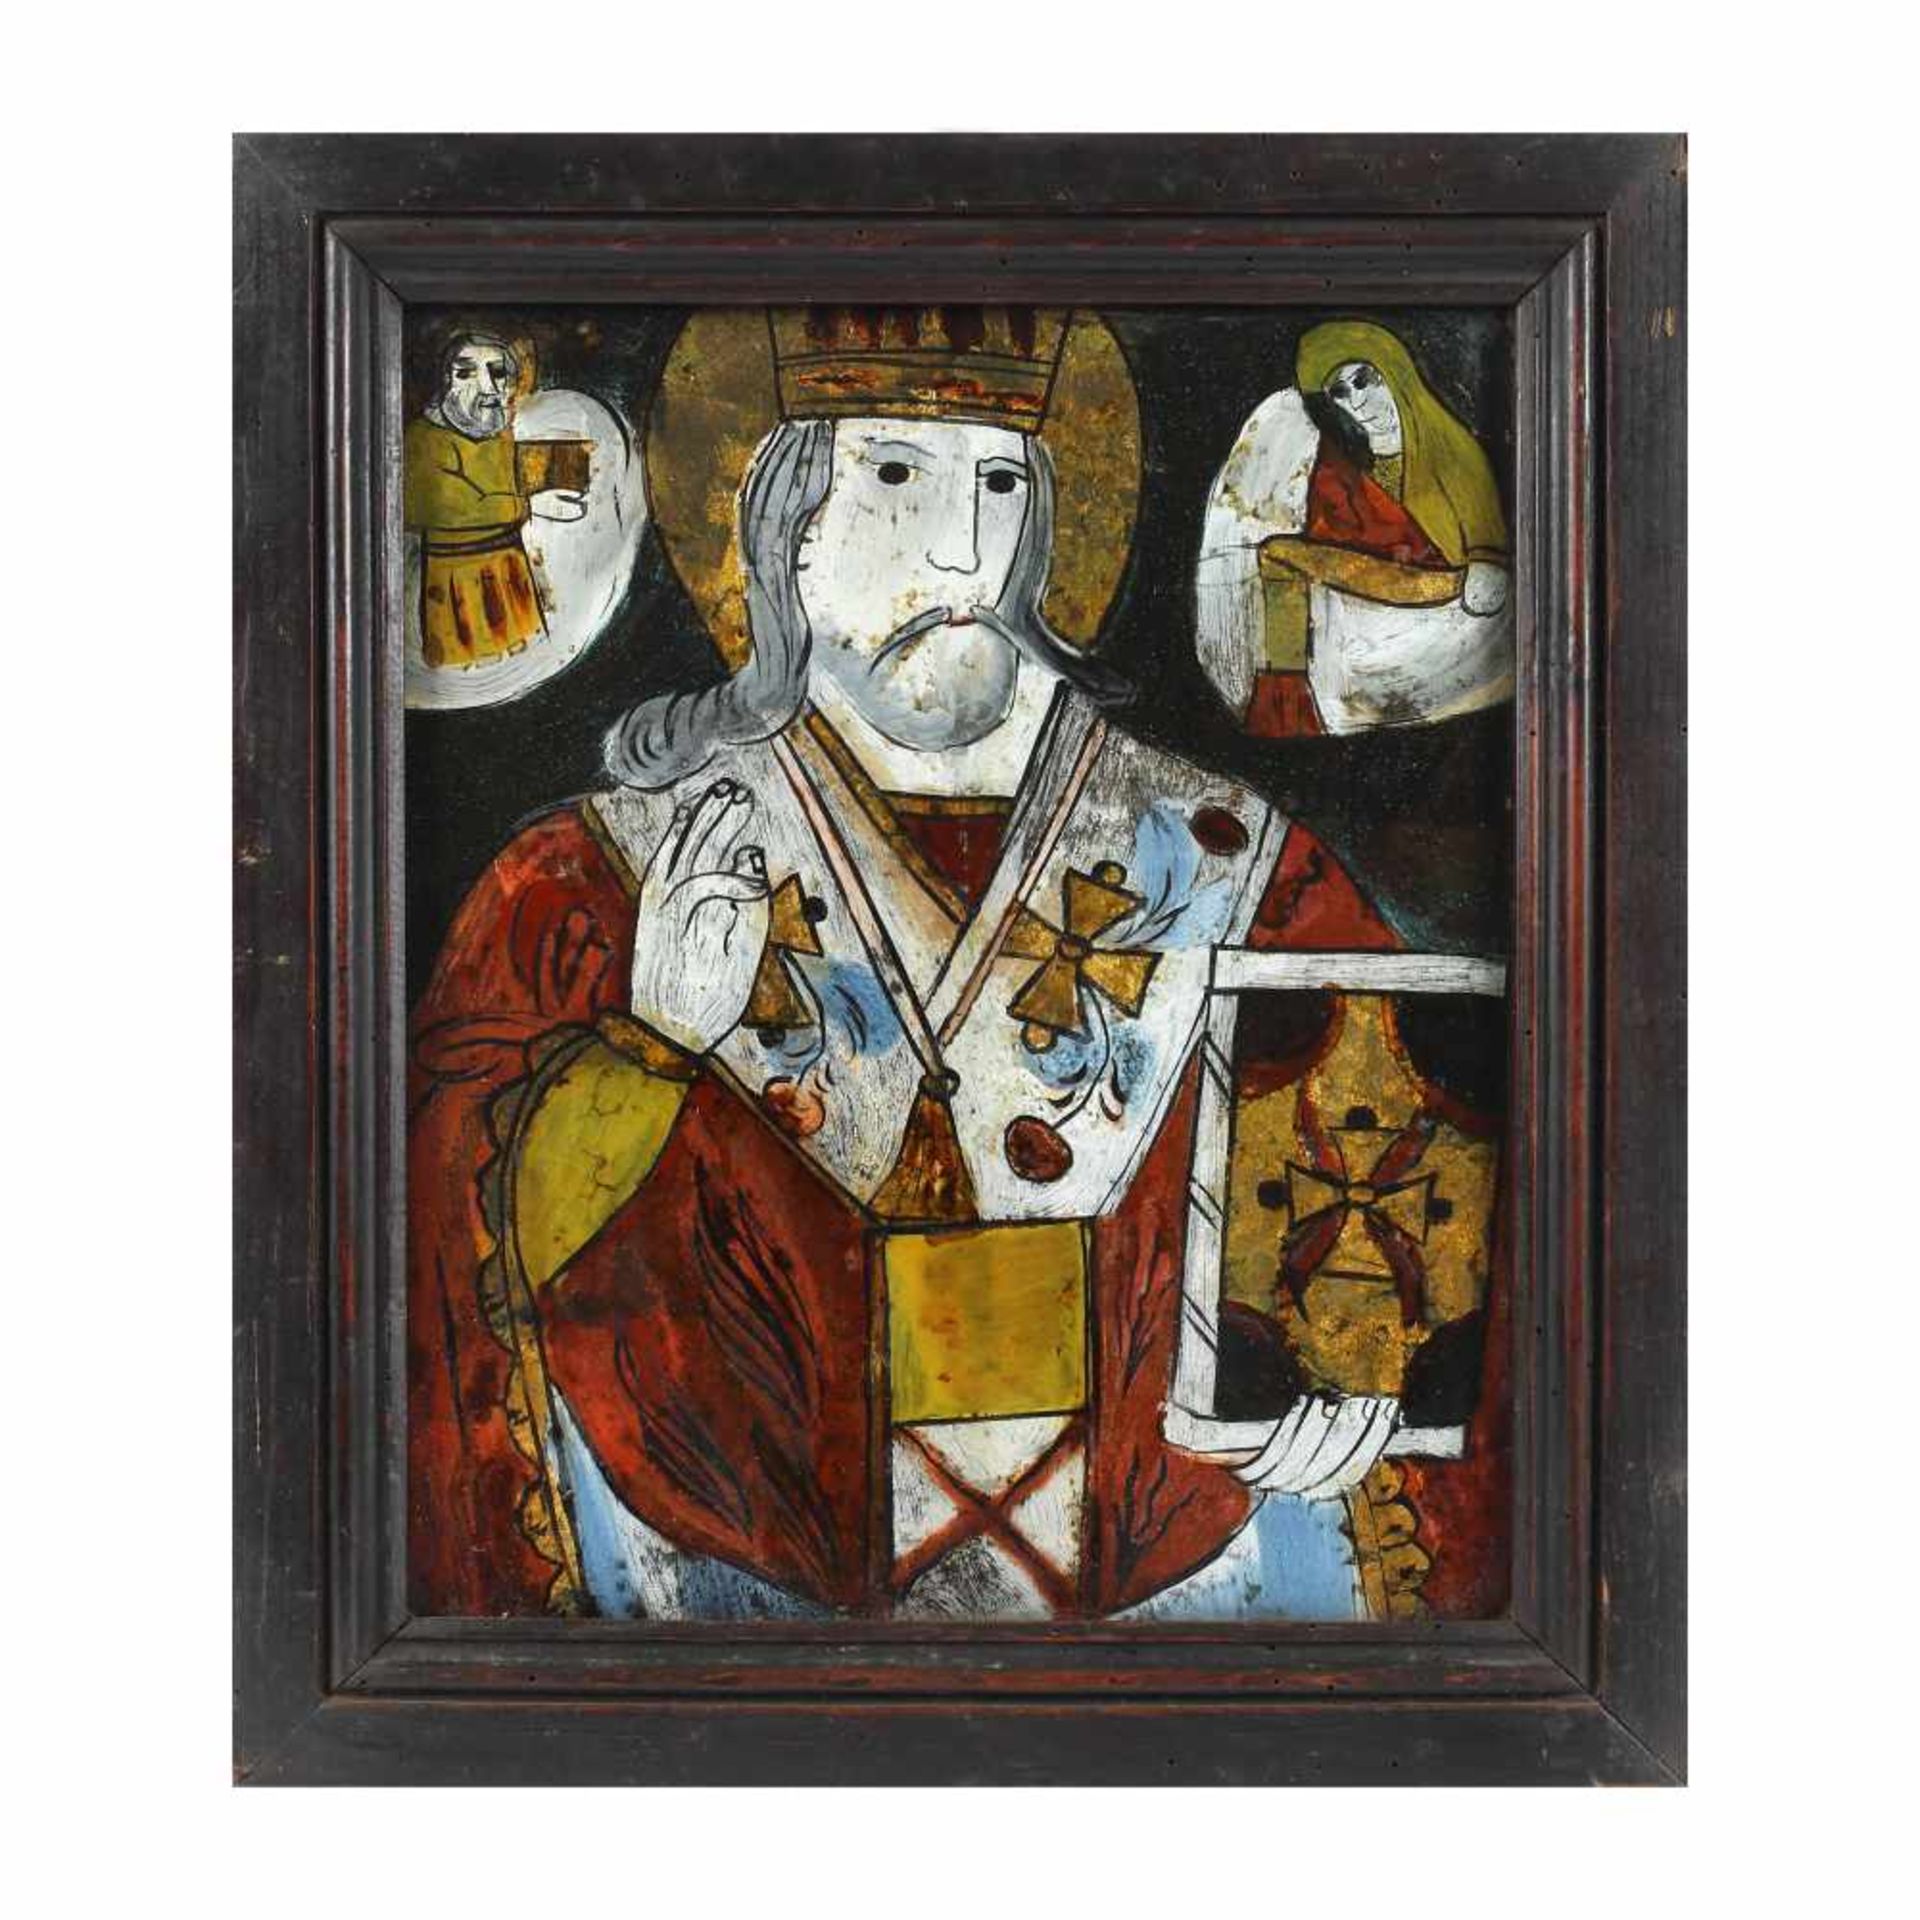 "Saint Nicholas", icon on glass, attributed to painter Petru Prodan, Maieri, Alba Iulia, late 19th c